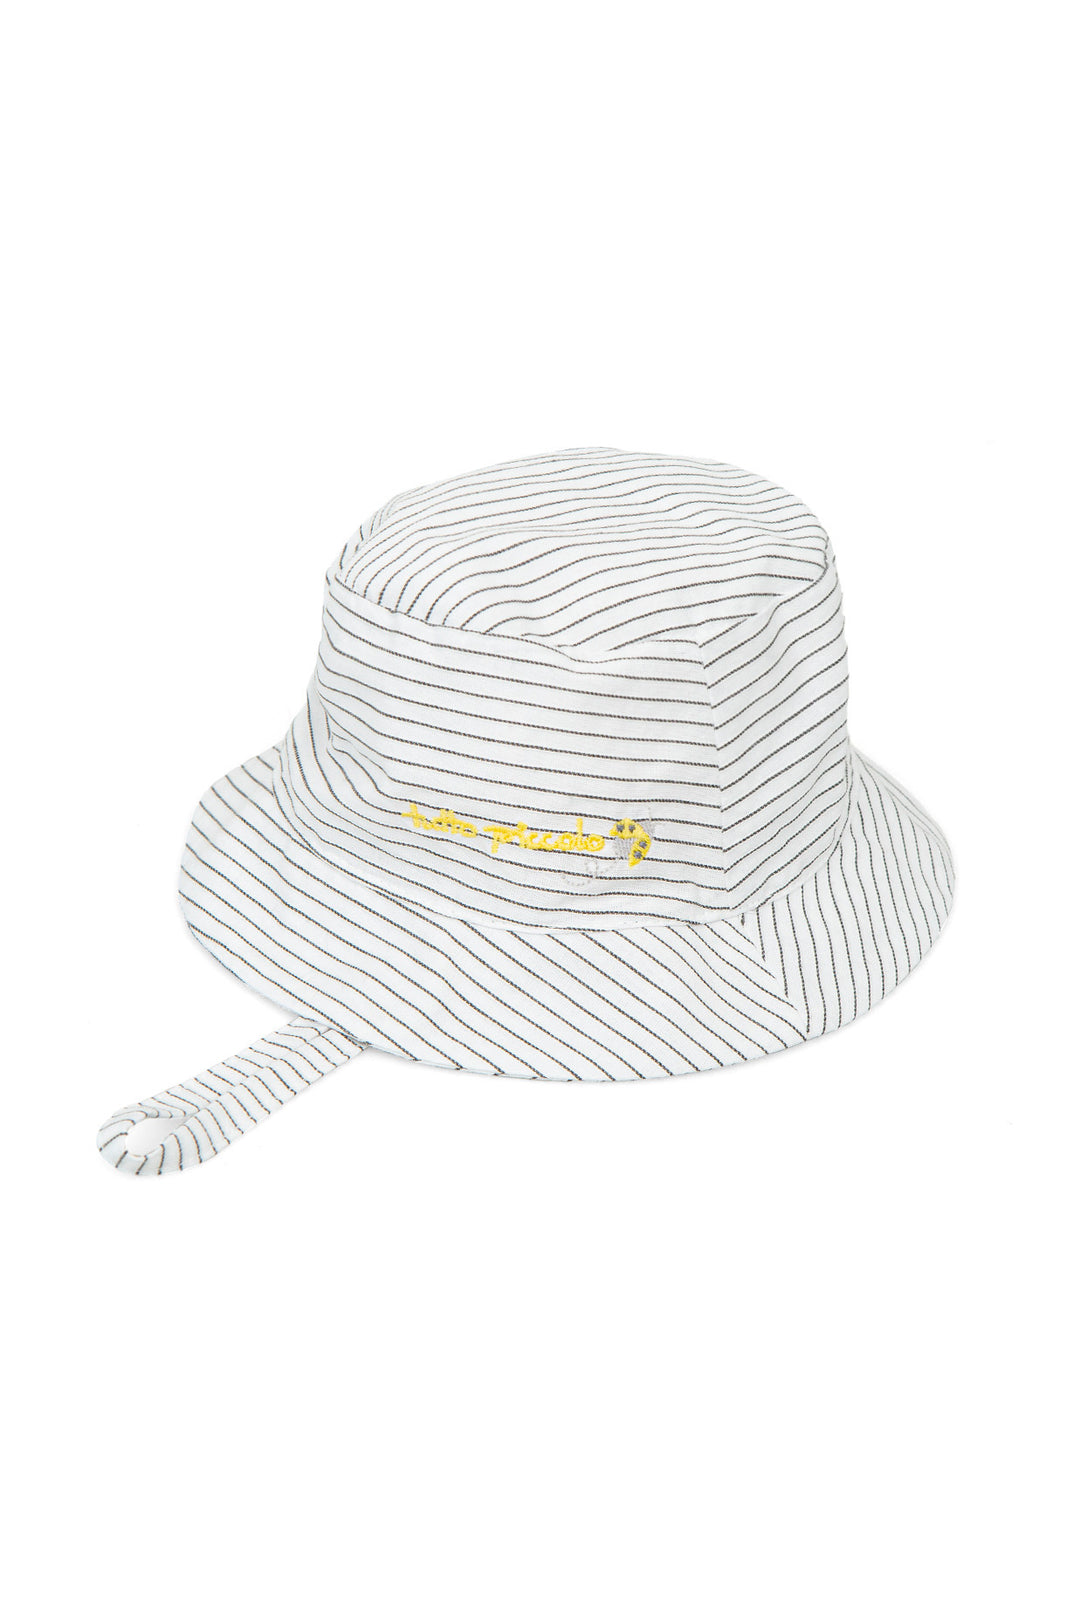 Tutto Piccolo Black & White Striped Sun Hat | iphoneandroidapplications